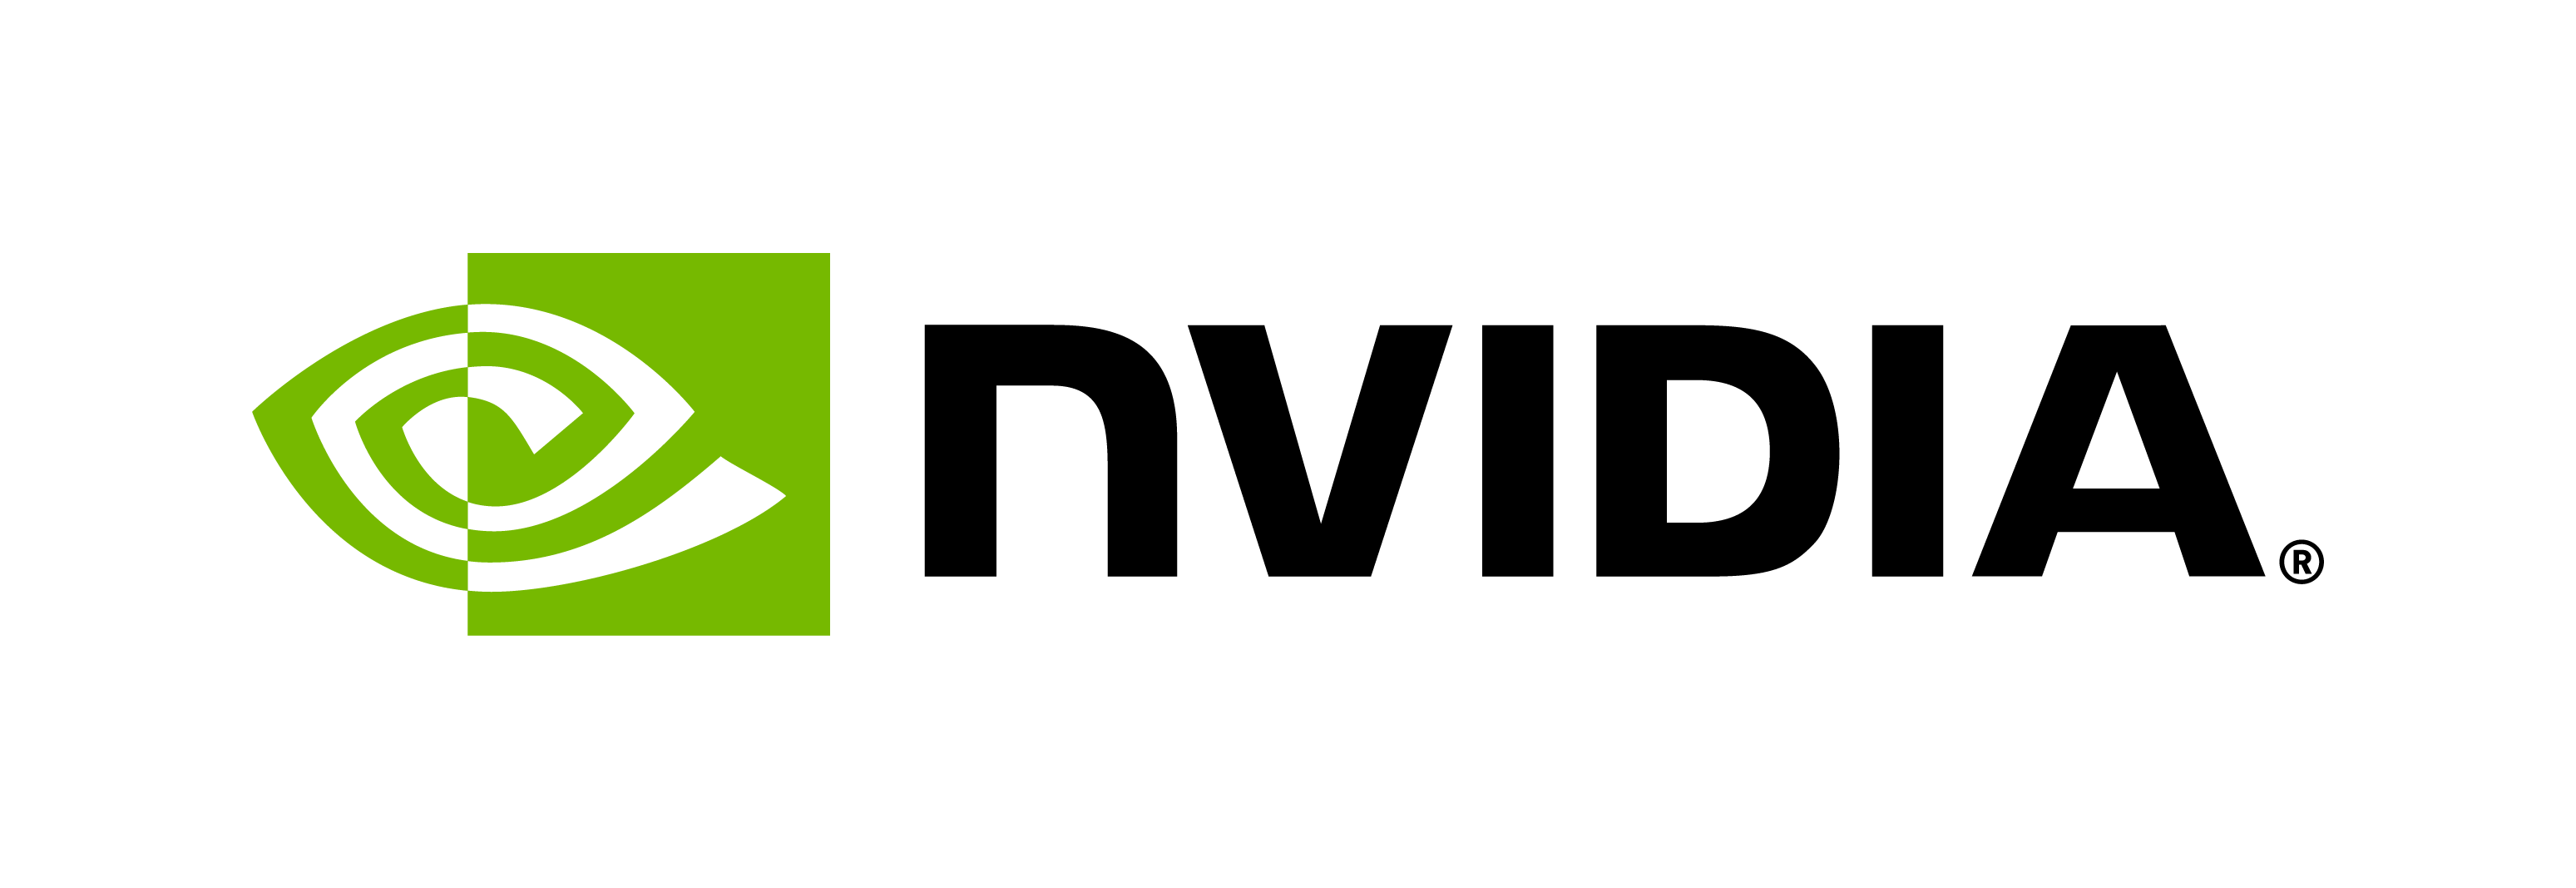 nvidia-logo-horiz-rgb-blk-for-screen (1)